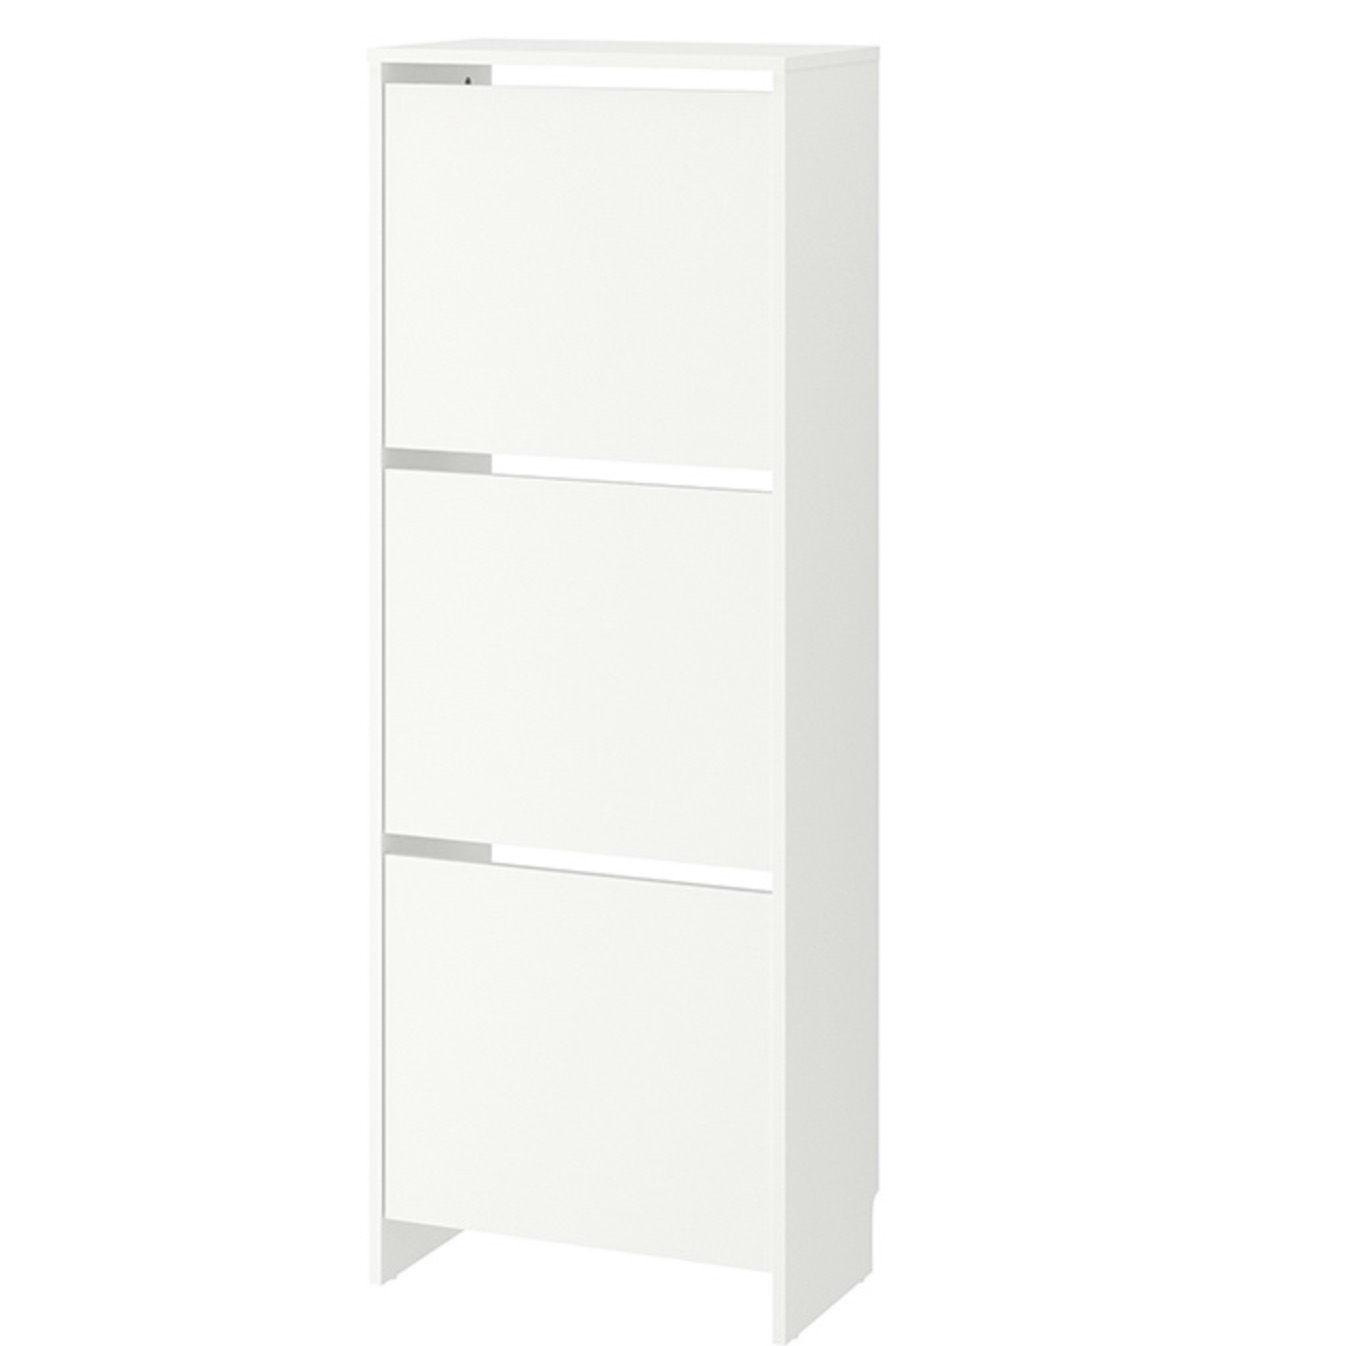 IKEA 宜家 BISSA 比萨 三门鞋柜 白色